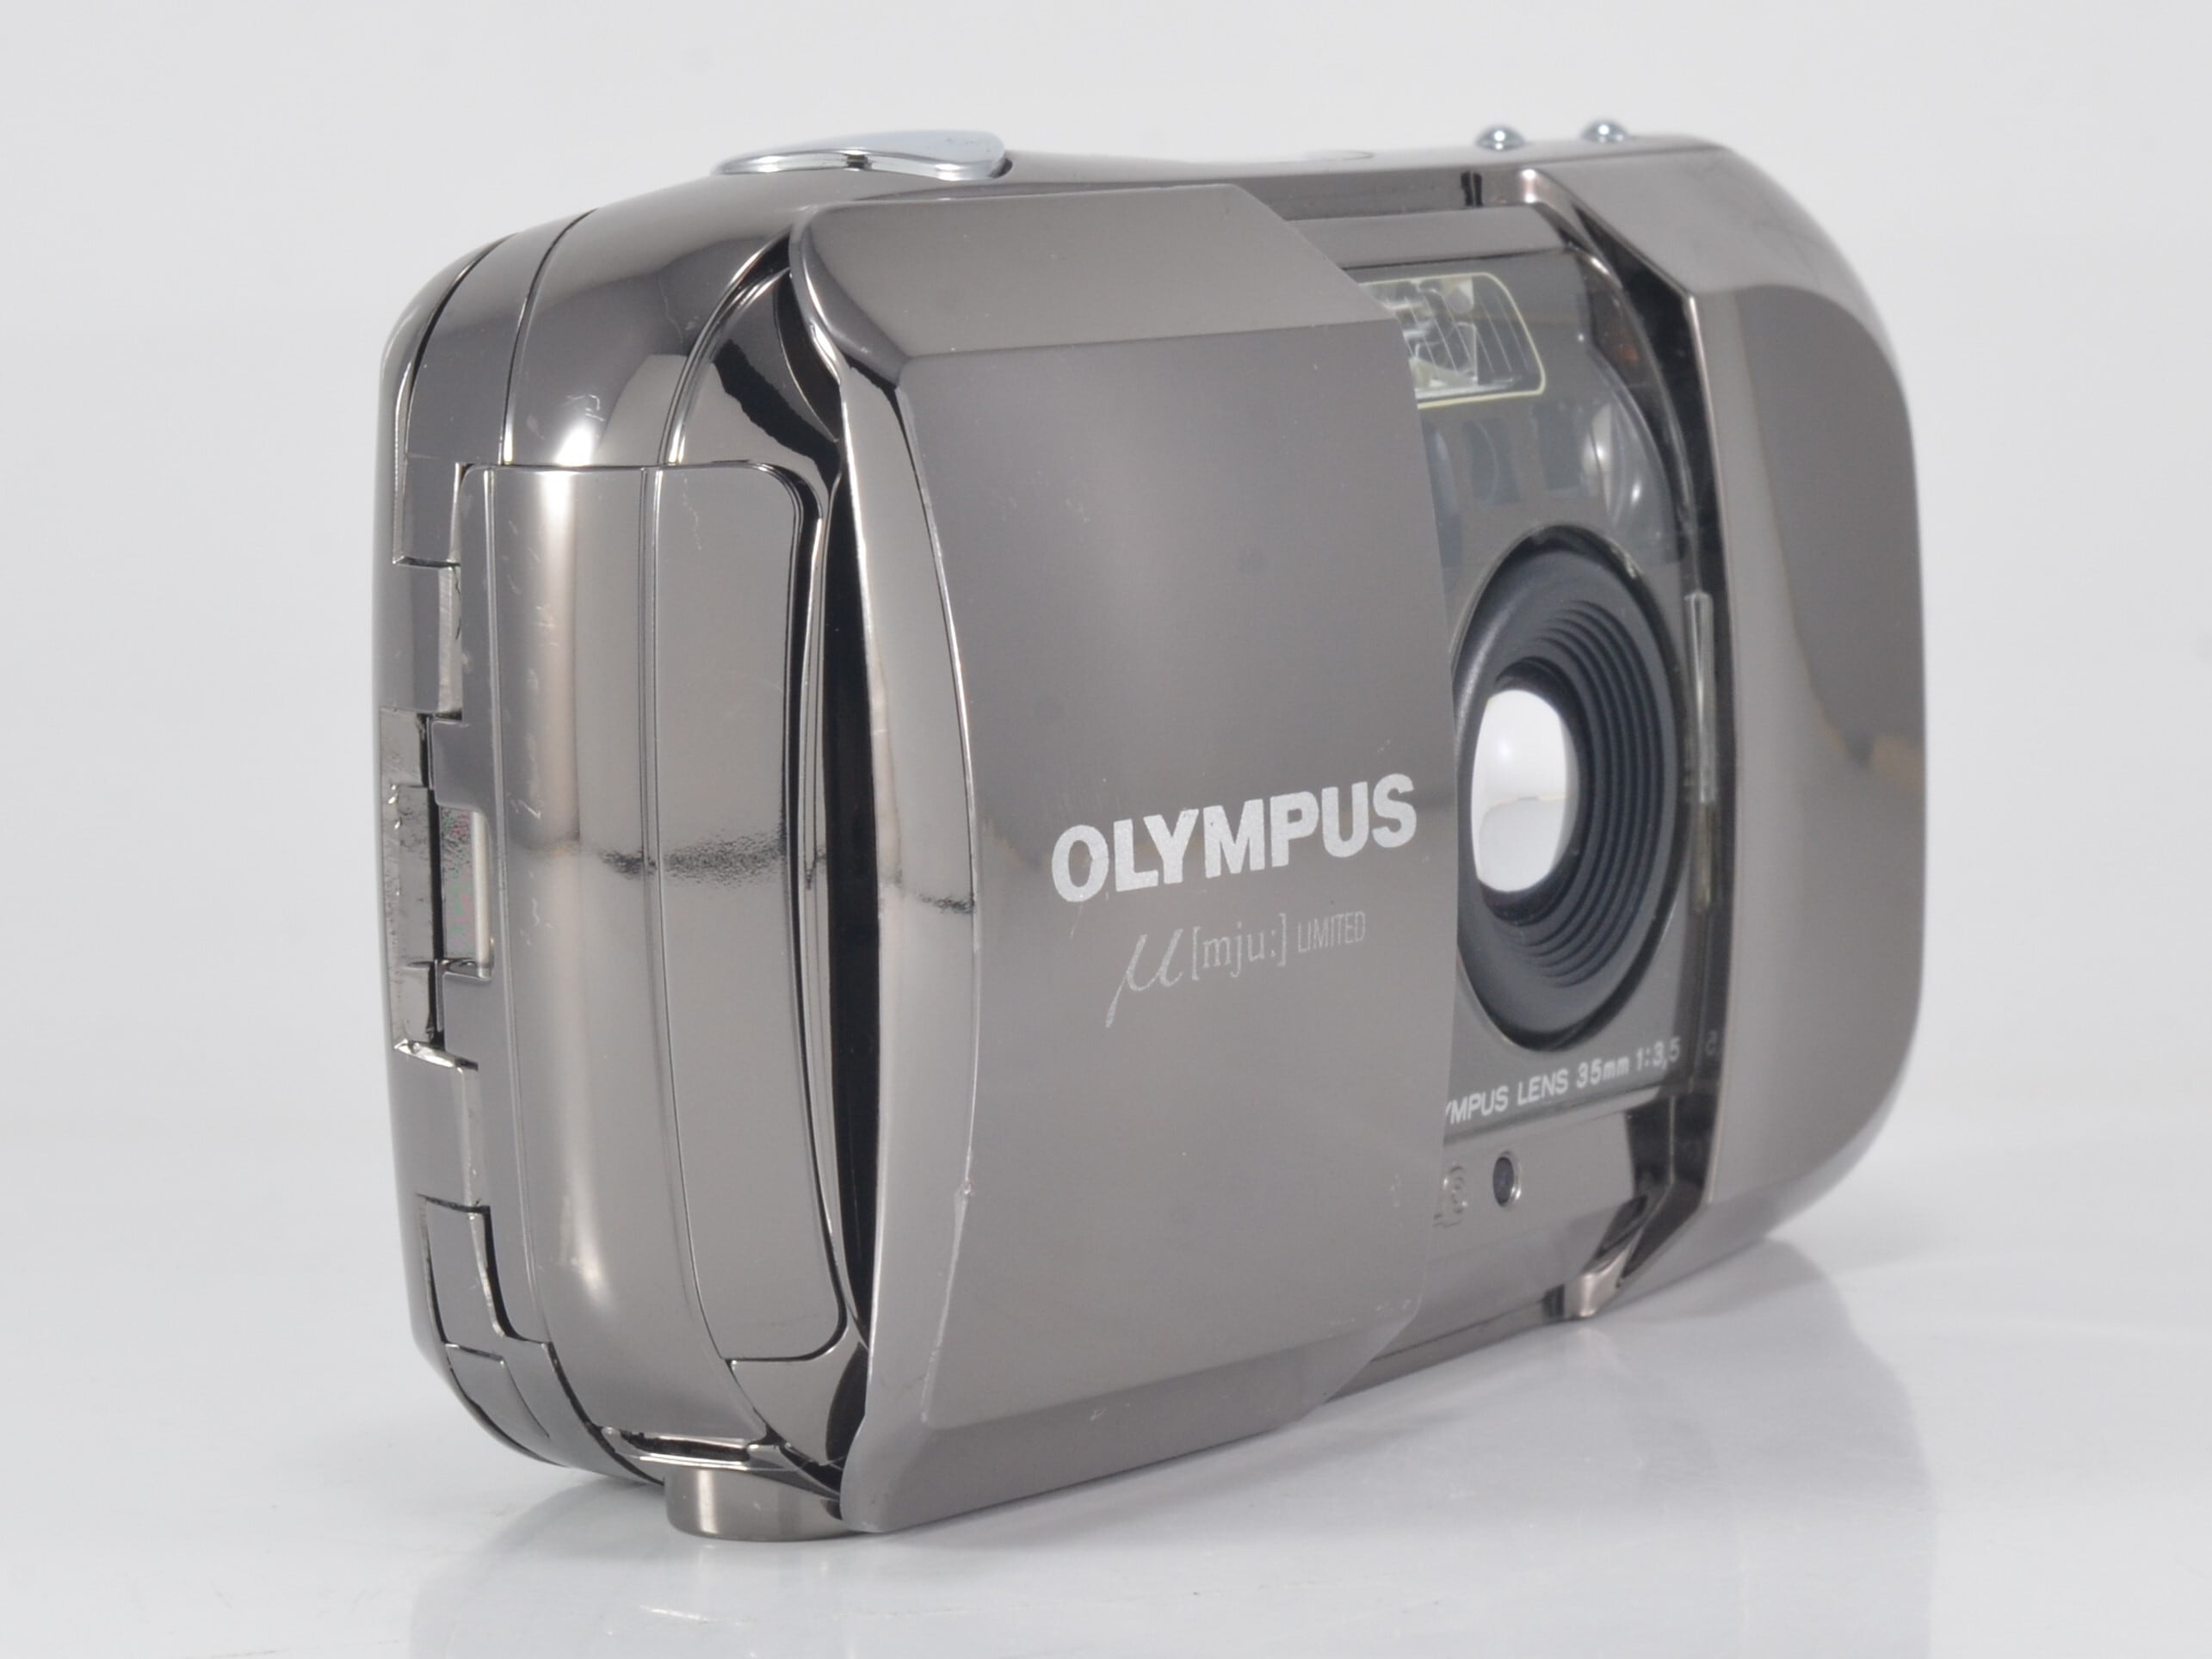 OLYMPUS μ mju LIMITED / AF 35mm F3.5 世界5万台限定生産品 希少 